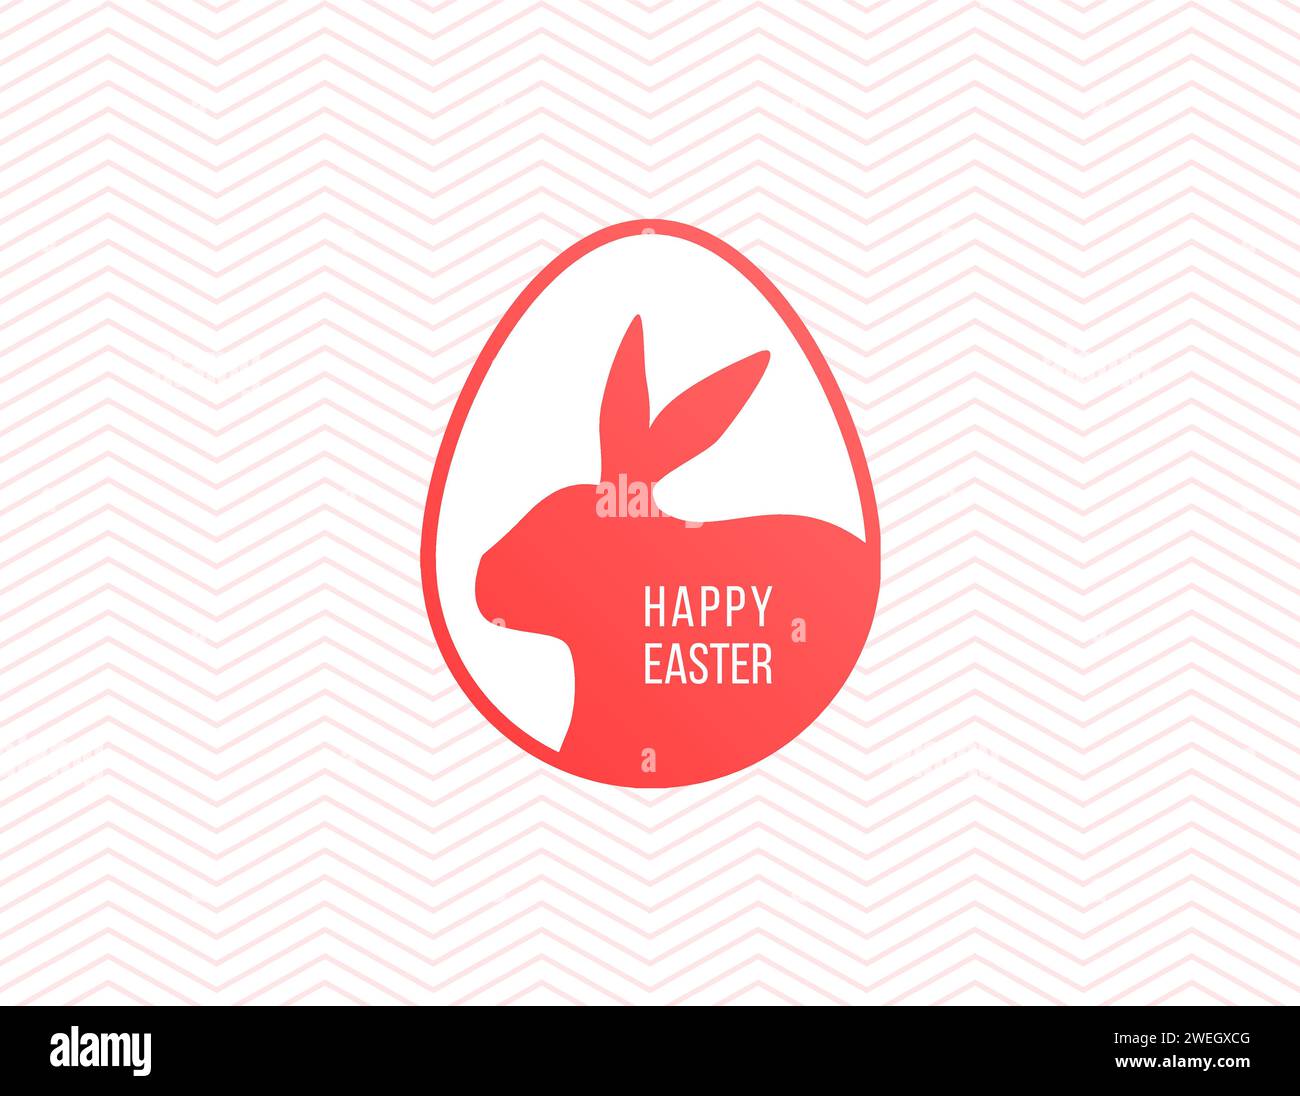 Carte de voeux joyeuses Pâques avec cadre en forme d'oeuf coupé en papier blanc, silhouette de lapin de Pâques rouge. Logo lapin de Pâques. Fond de motif zigzag rose Illustration de Vecteur